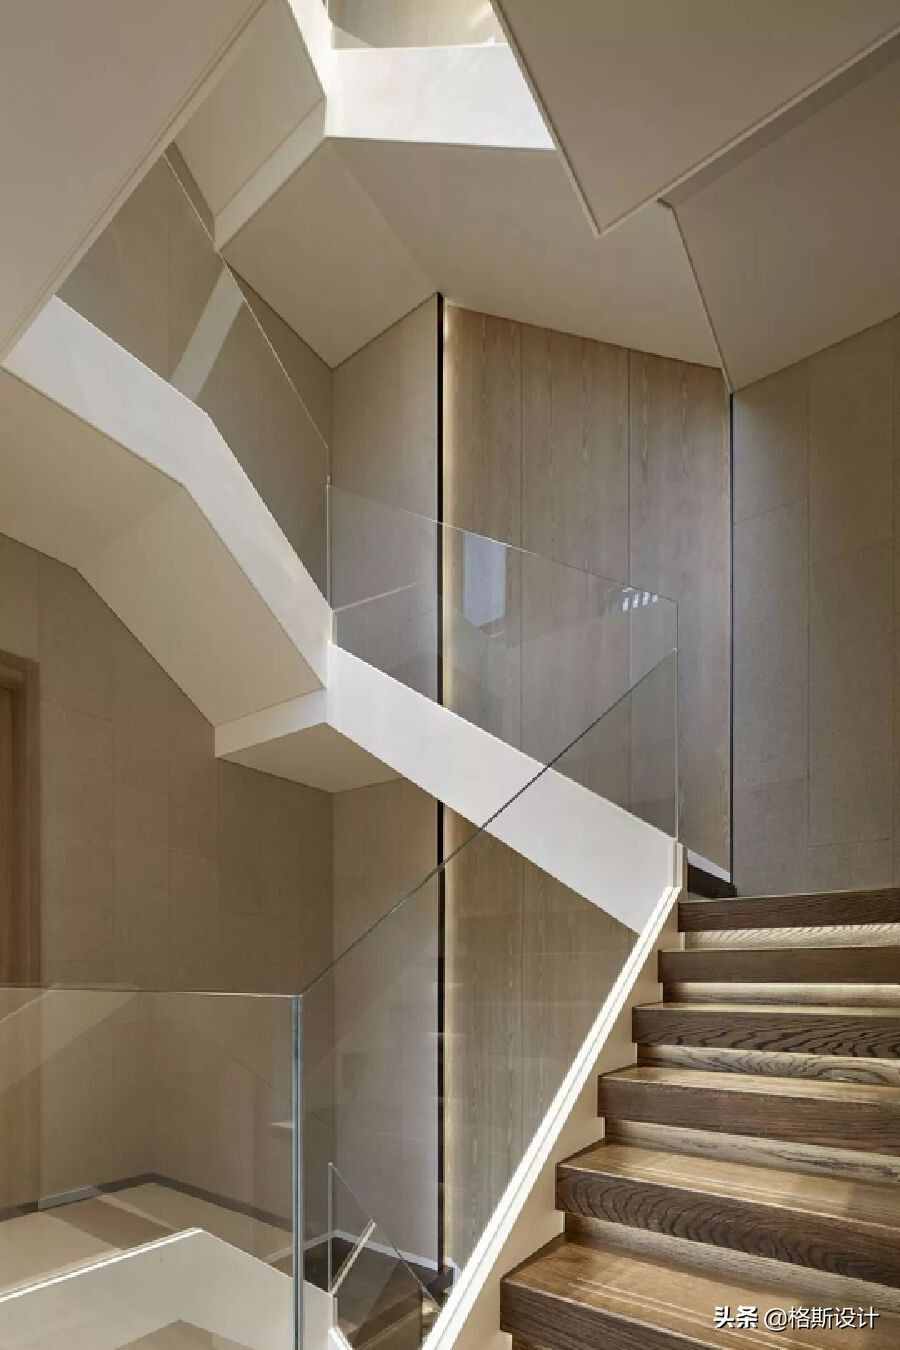 了解楼梯的形式、结构和材质，找到适合自己的款式